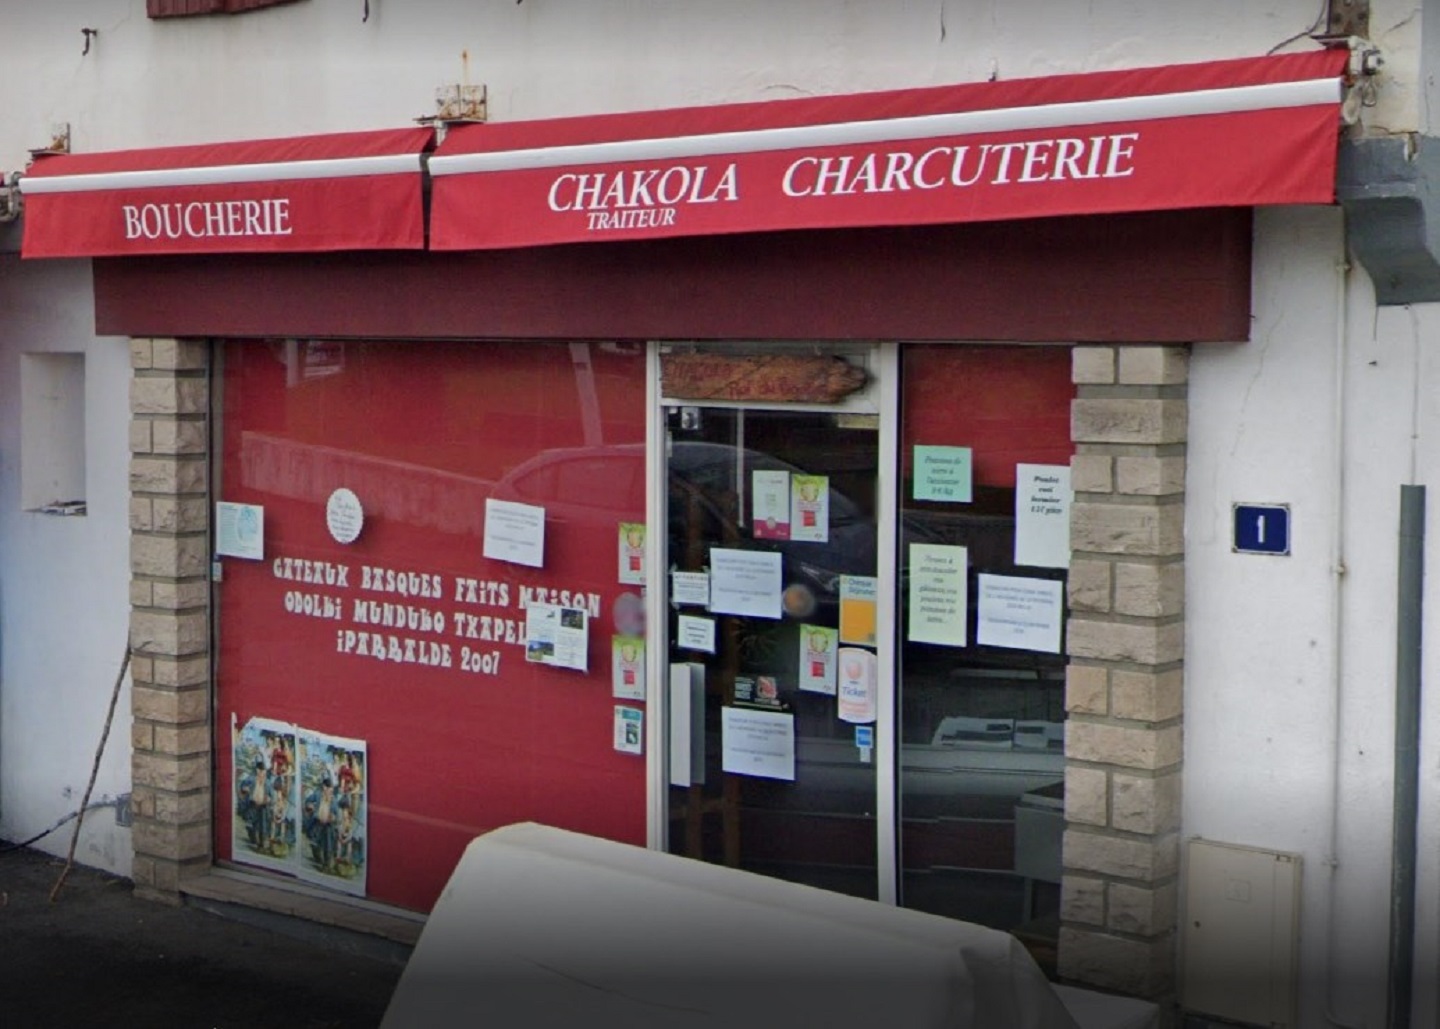 Boucherie charcuterie Chakola  France Nouvelle-Aquitaine Pyrénées-Atlantiques Ciboure 64500